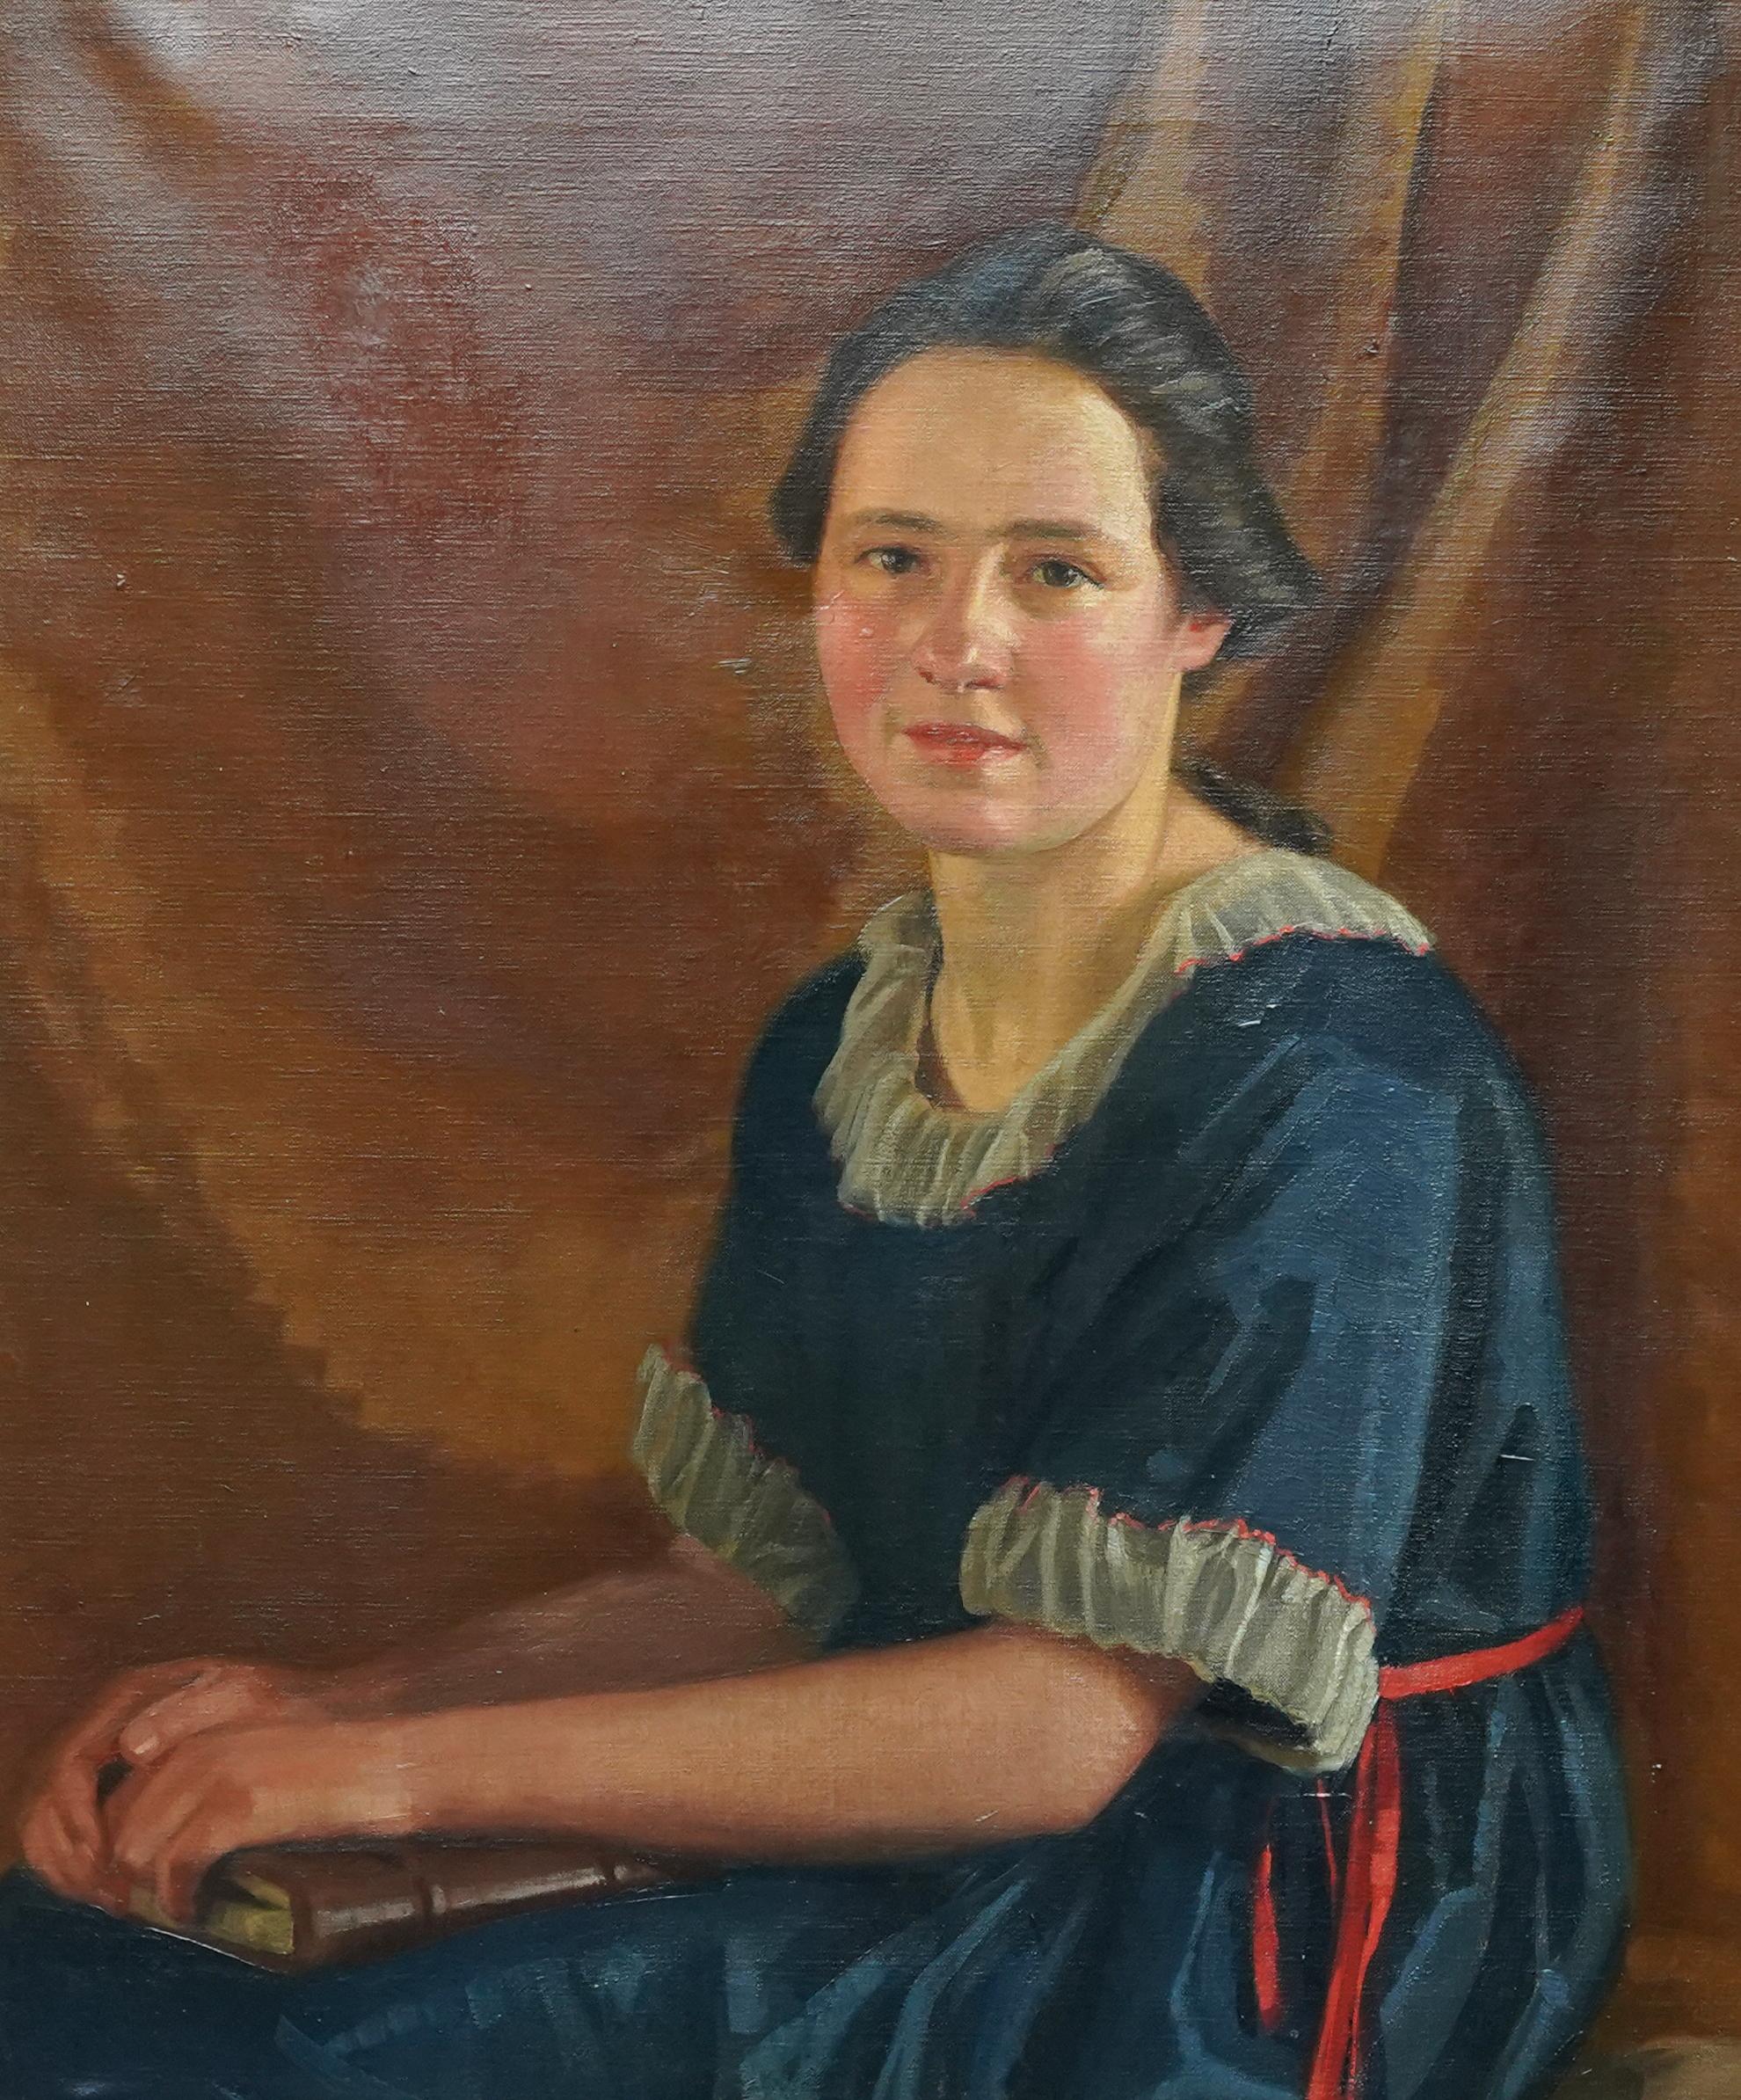 Porträt einer jungen Frau mit Buch - Britisches Art-déco-Porträt-Ölgemälde der 20er Jahre – Painting von James P. Barraclough